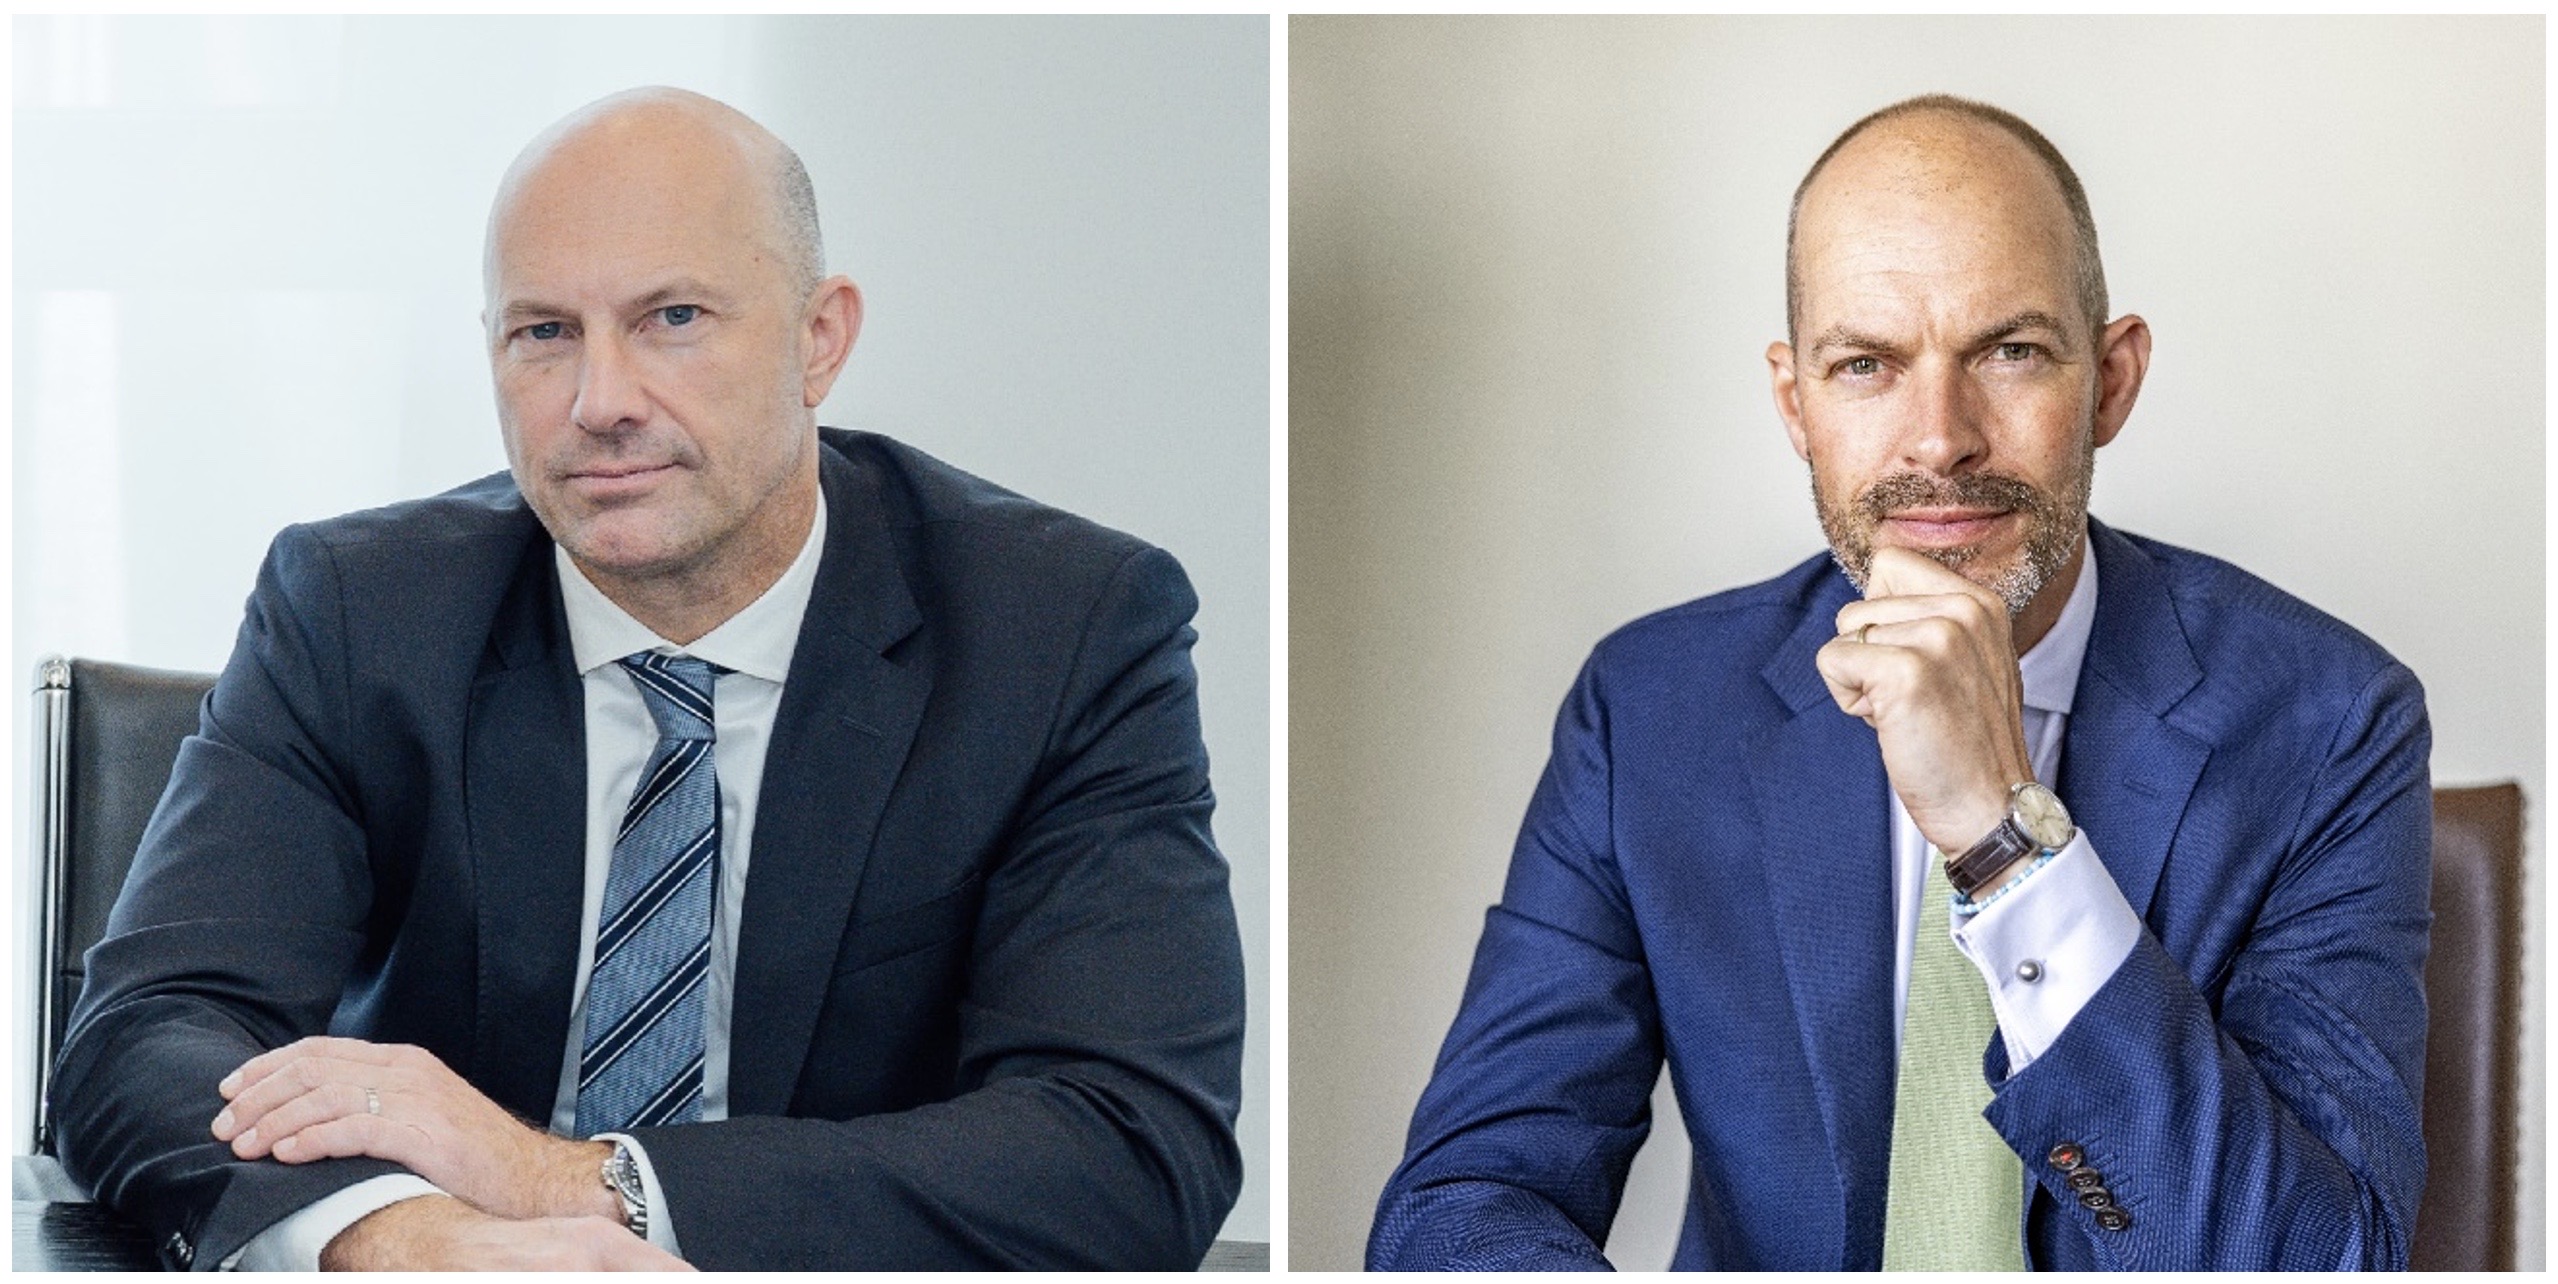 Der geschäftsführende Gesellschafter der FFG Flensburger Fahrzeugbau Gesellschaft mbH wird zukünftig von Jörg Kamper (l.) und Max Heimann unterstützt.